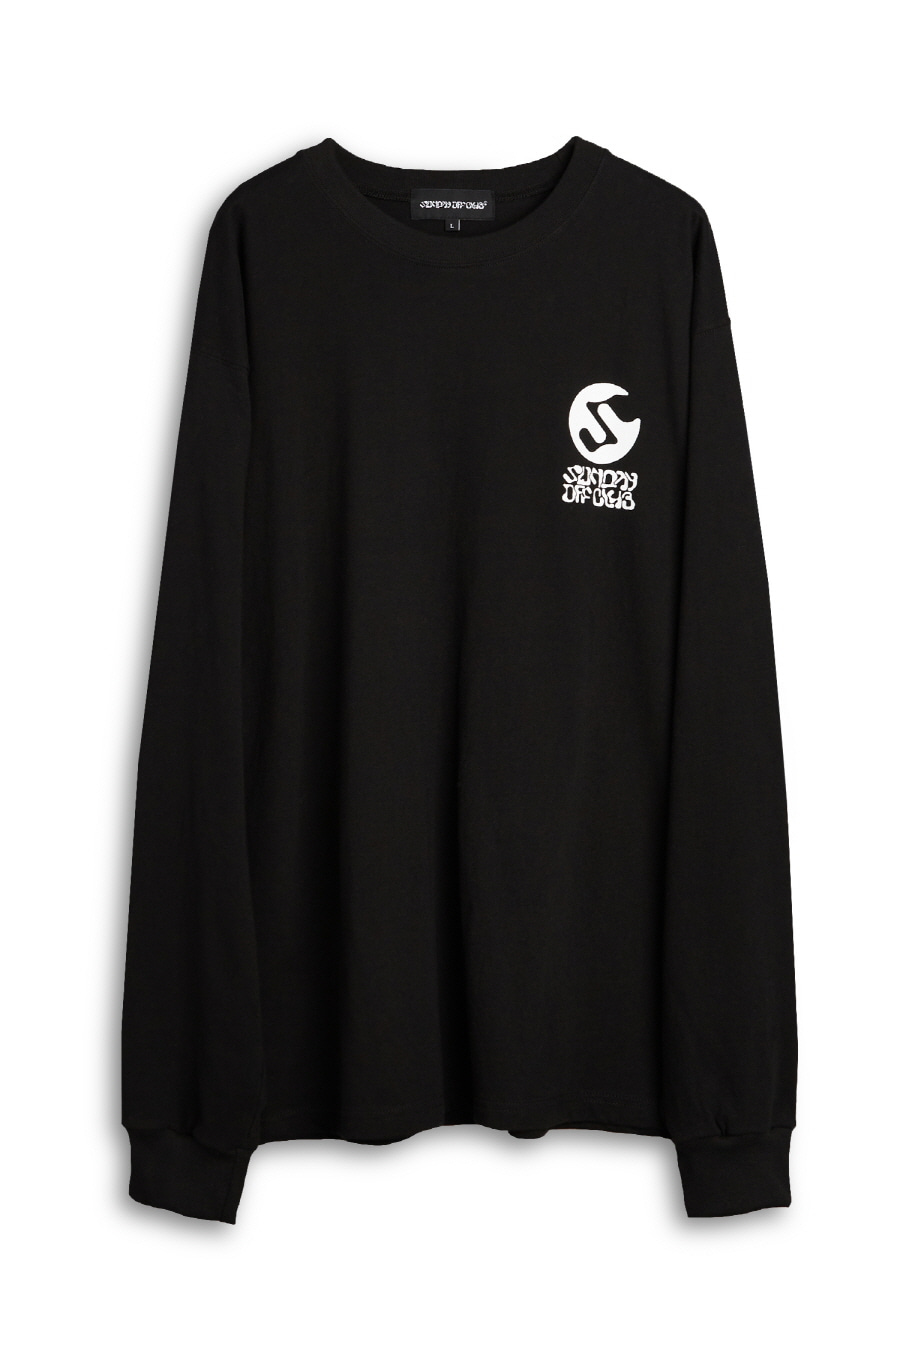 OG Logo Long Sleeve T-Shirt - Black